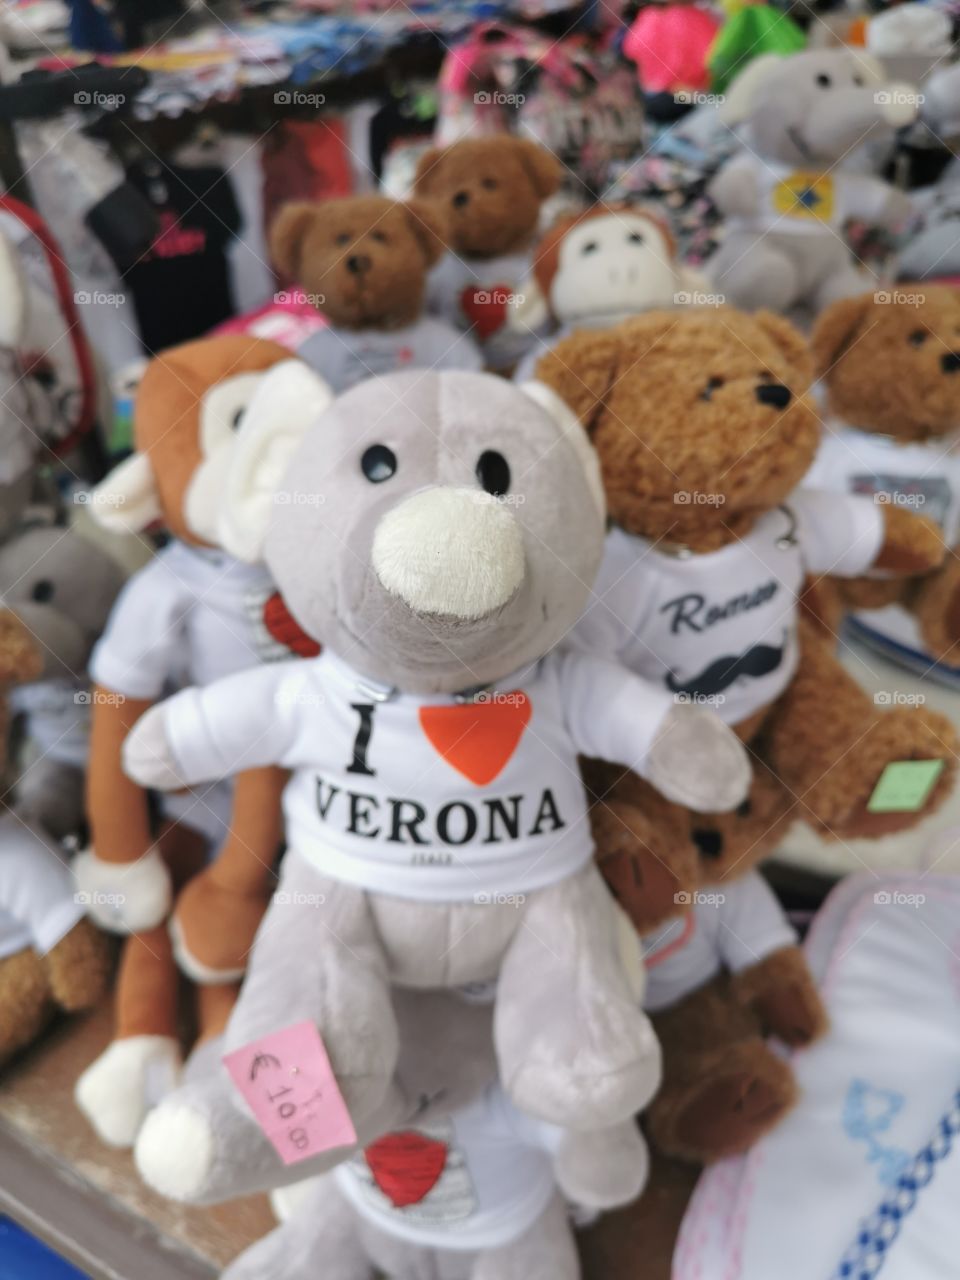 I love Verona